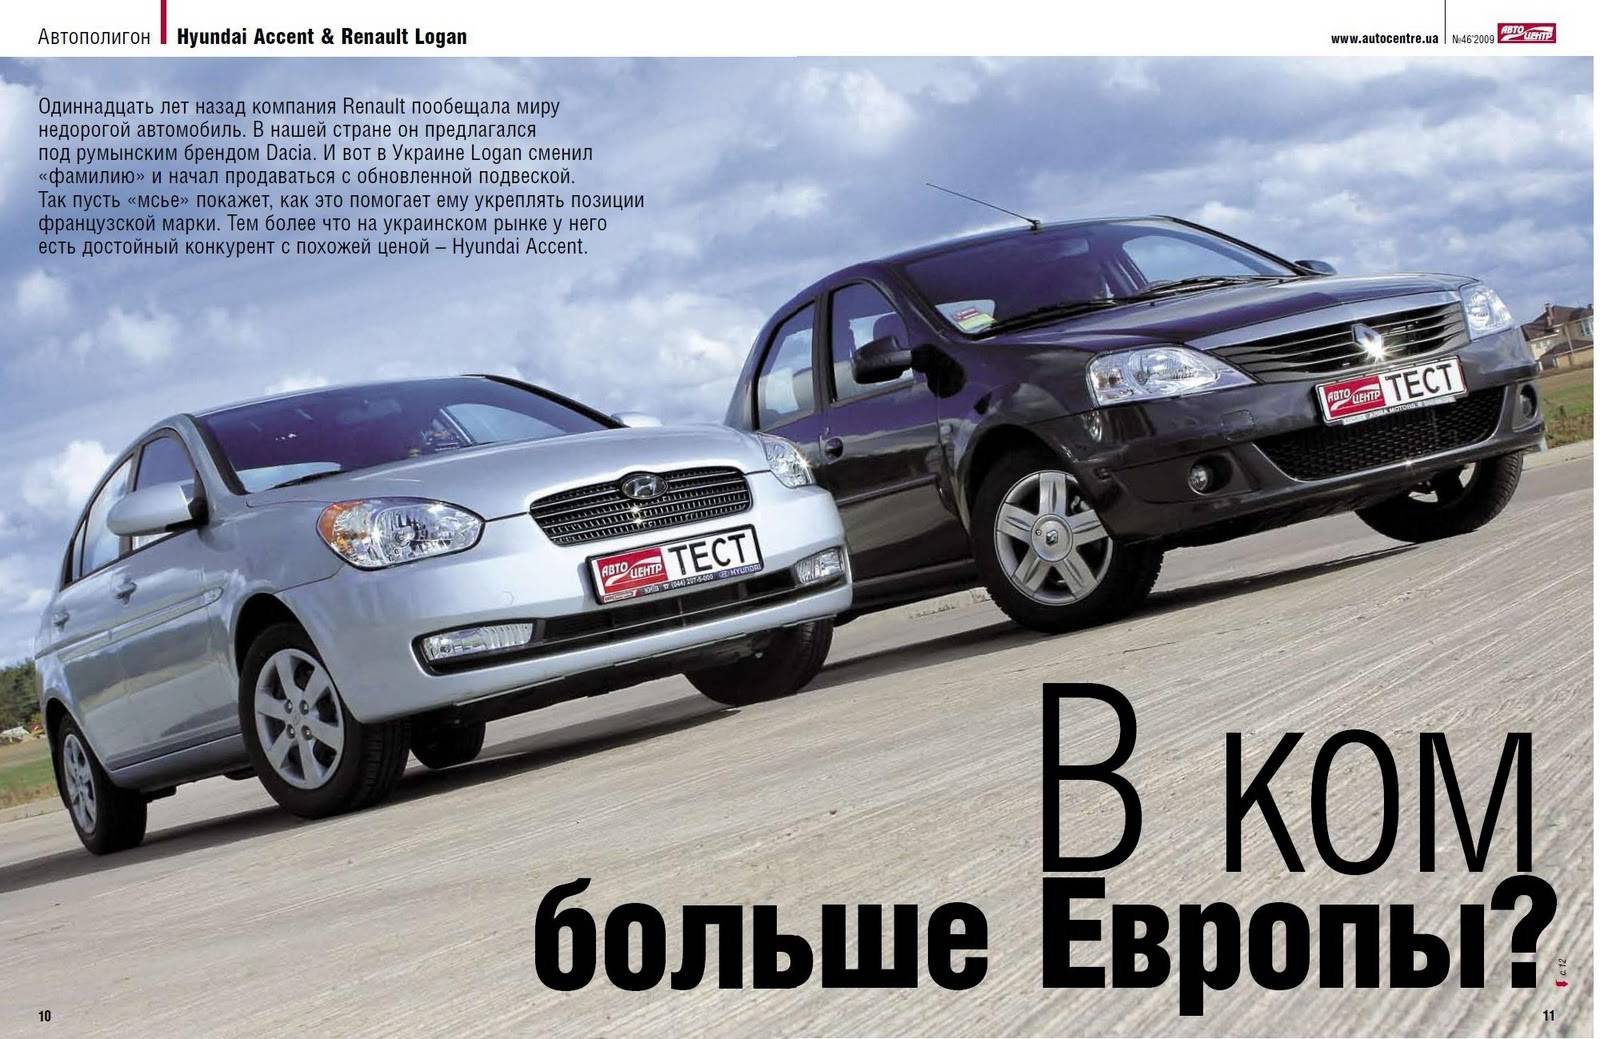 Dacia sandero стал самой популярной моделью в европе - журнал движок.